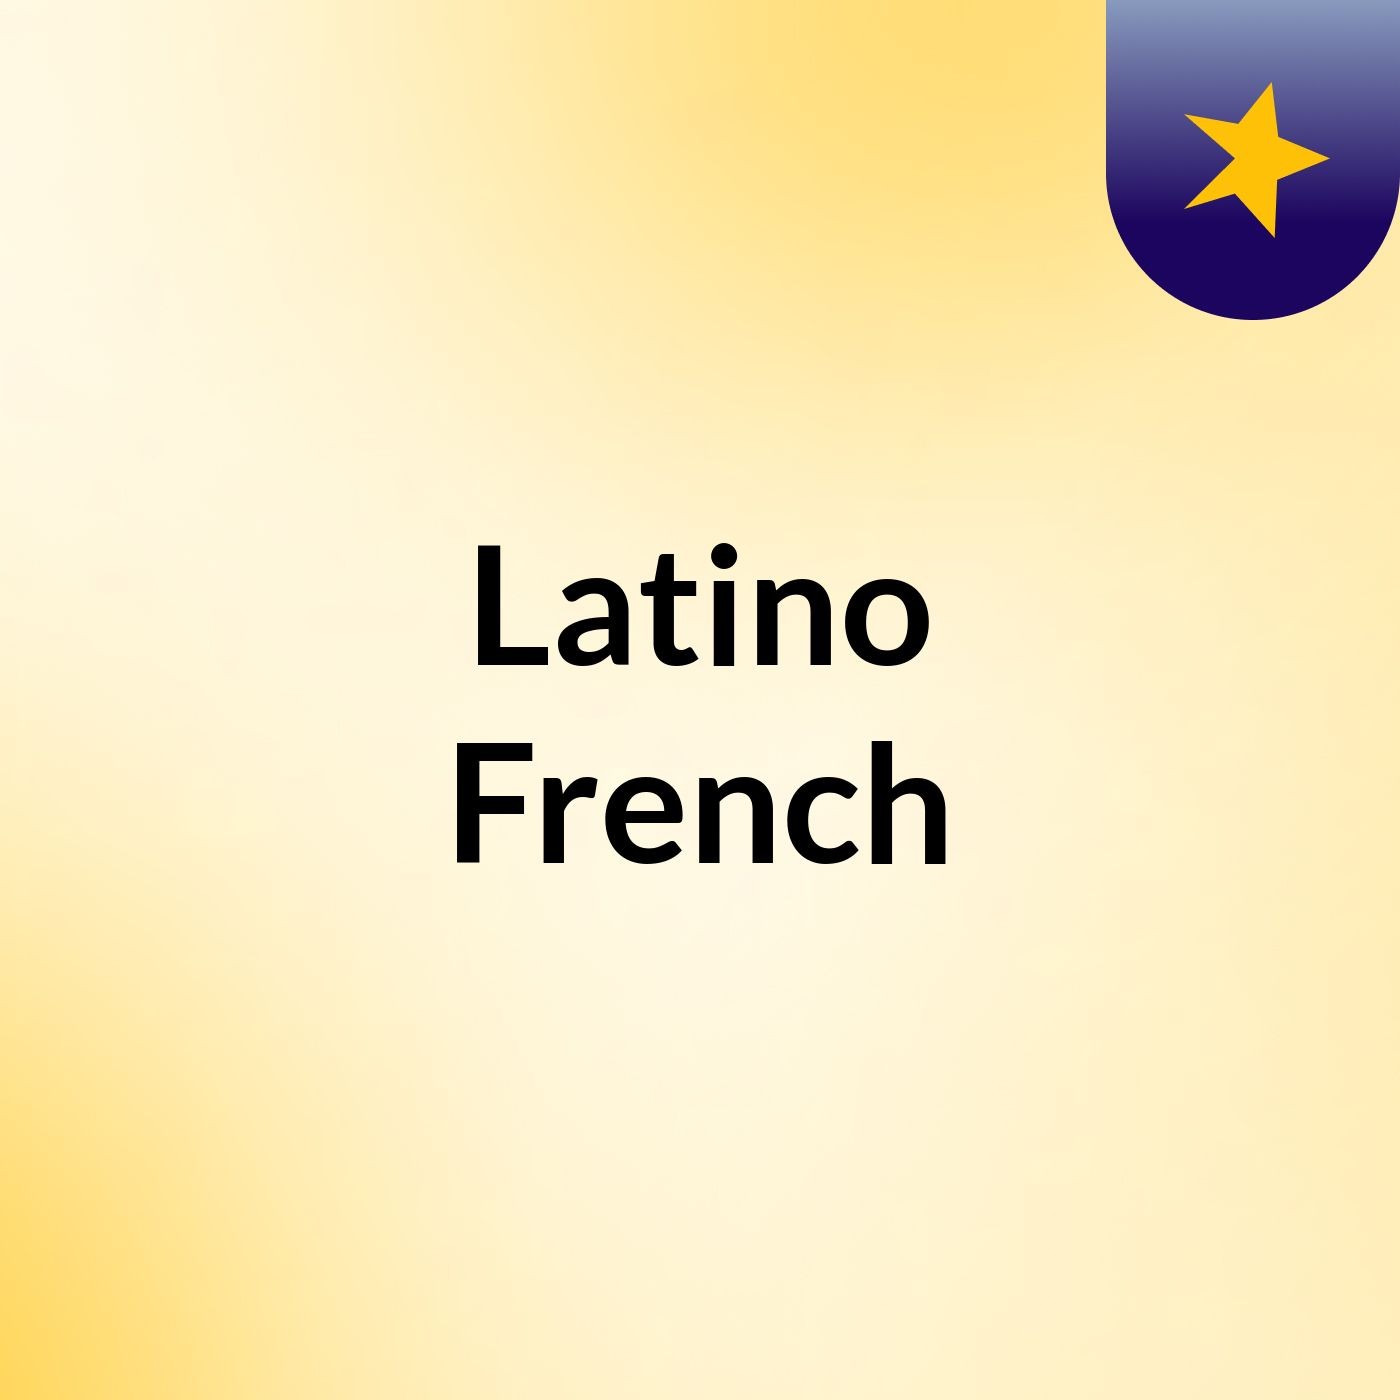 Latino & French